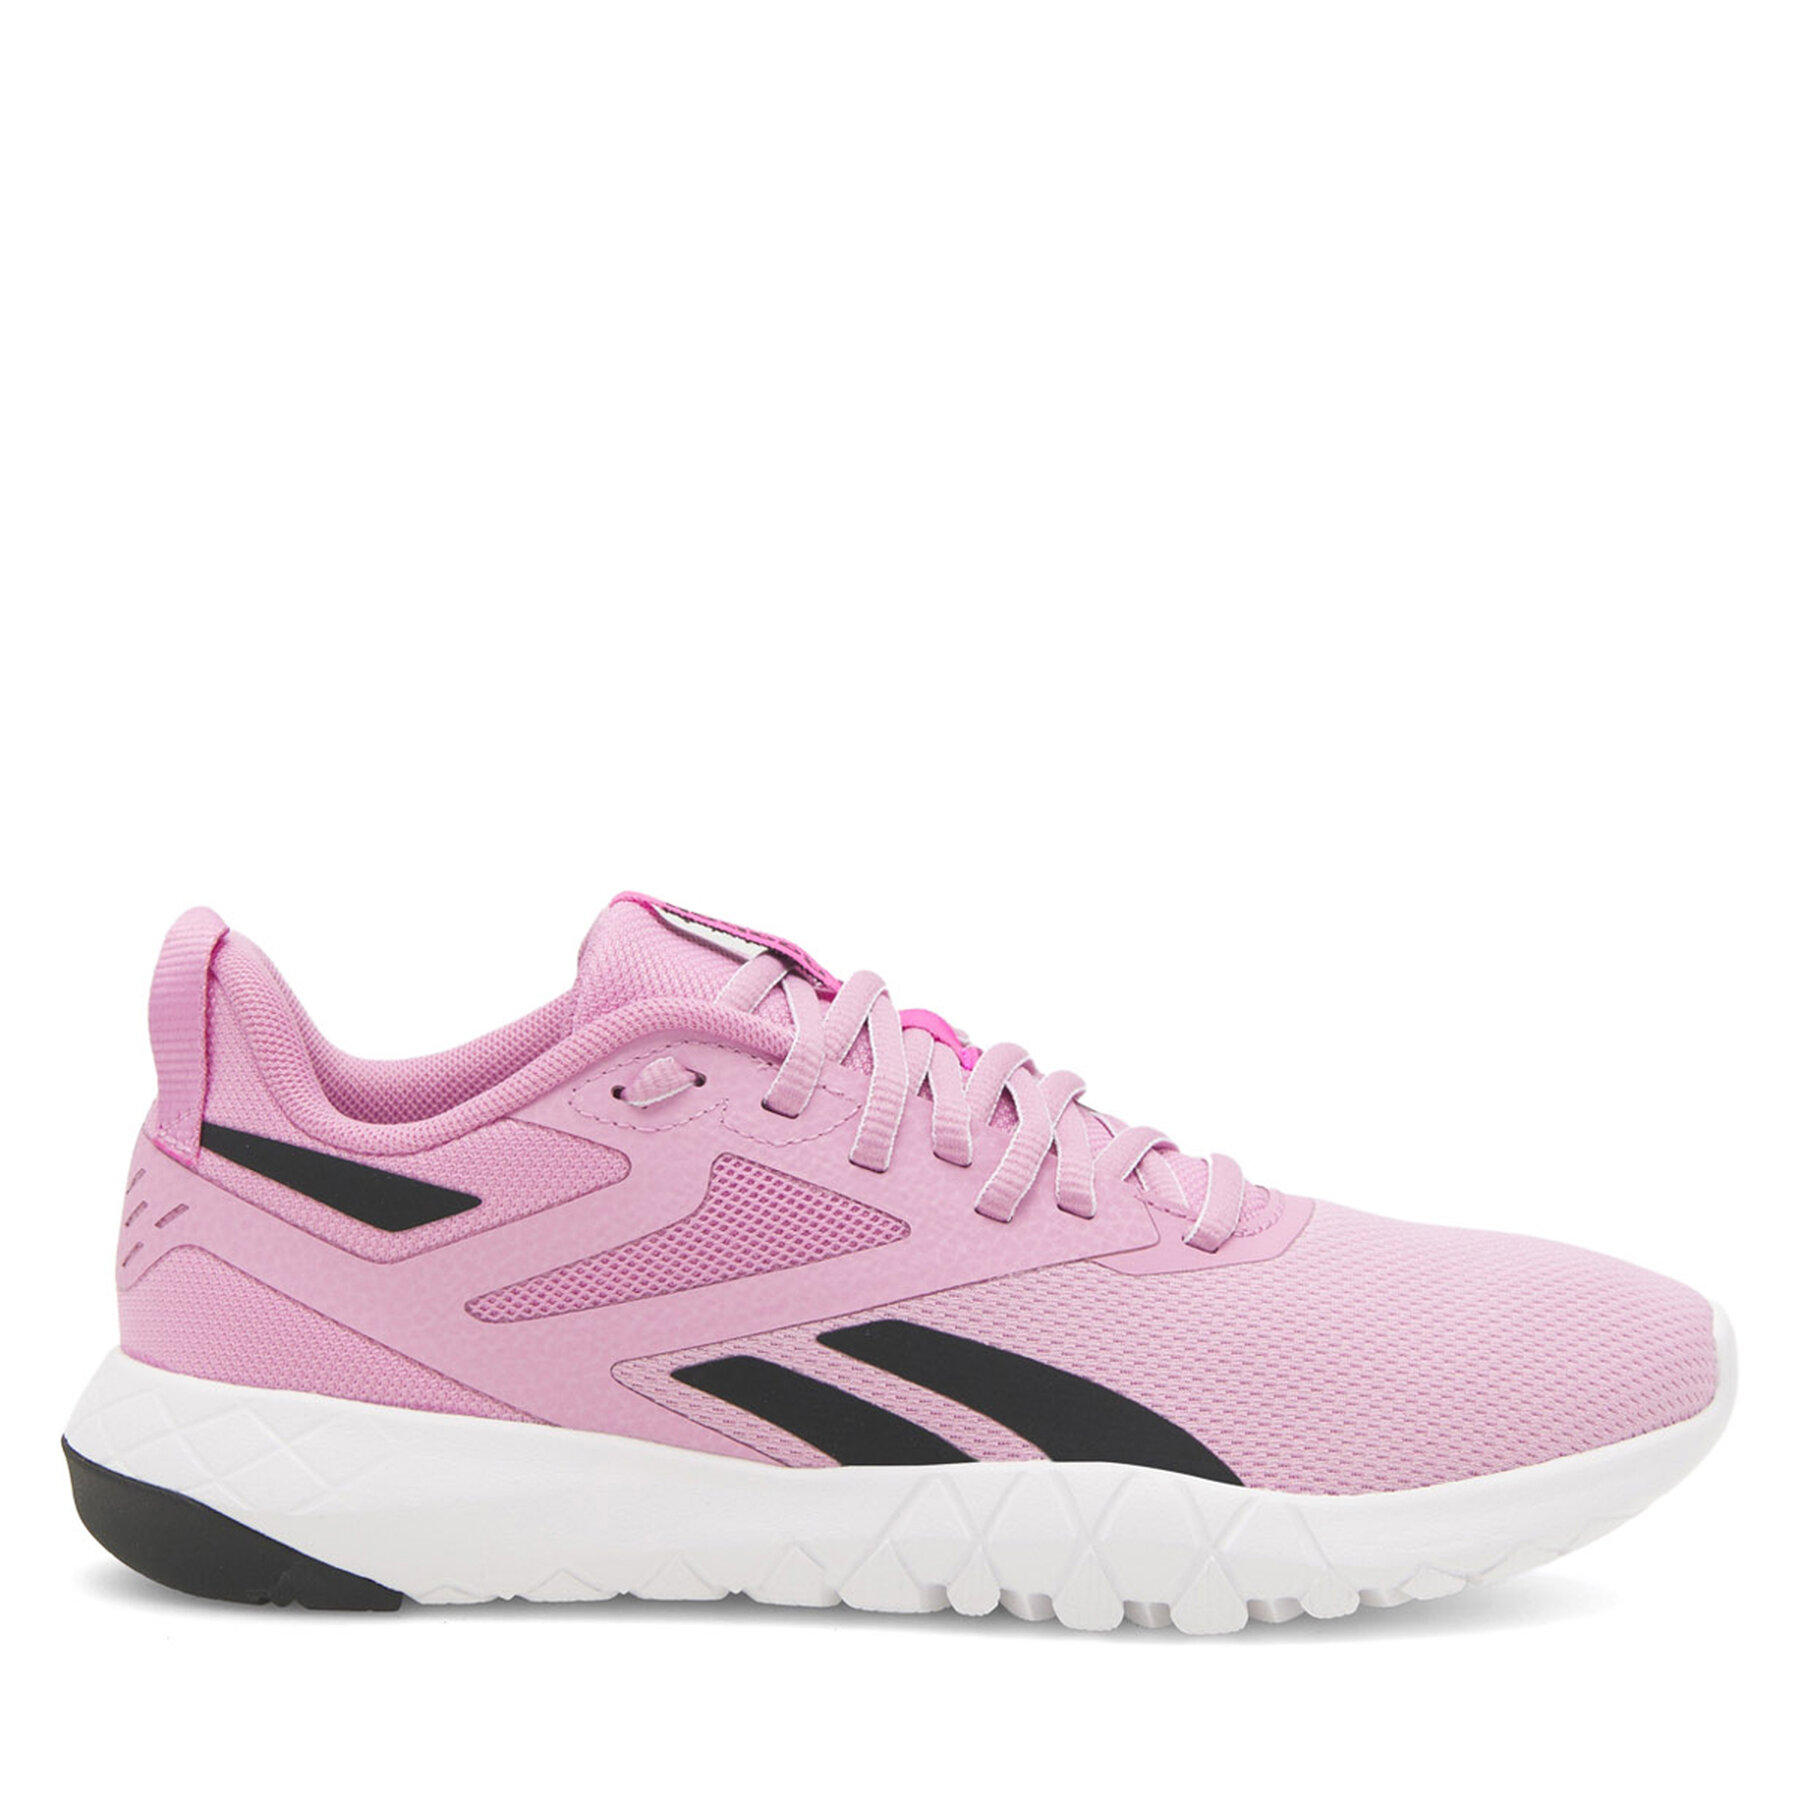 Schuhe Reebok Flexagon Force 4 100074518 Pink von Reebok